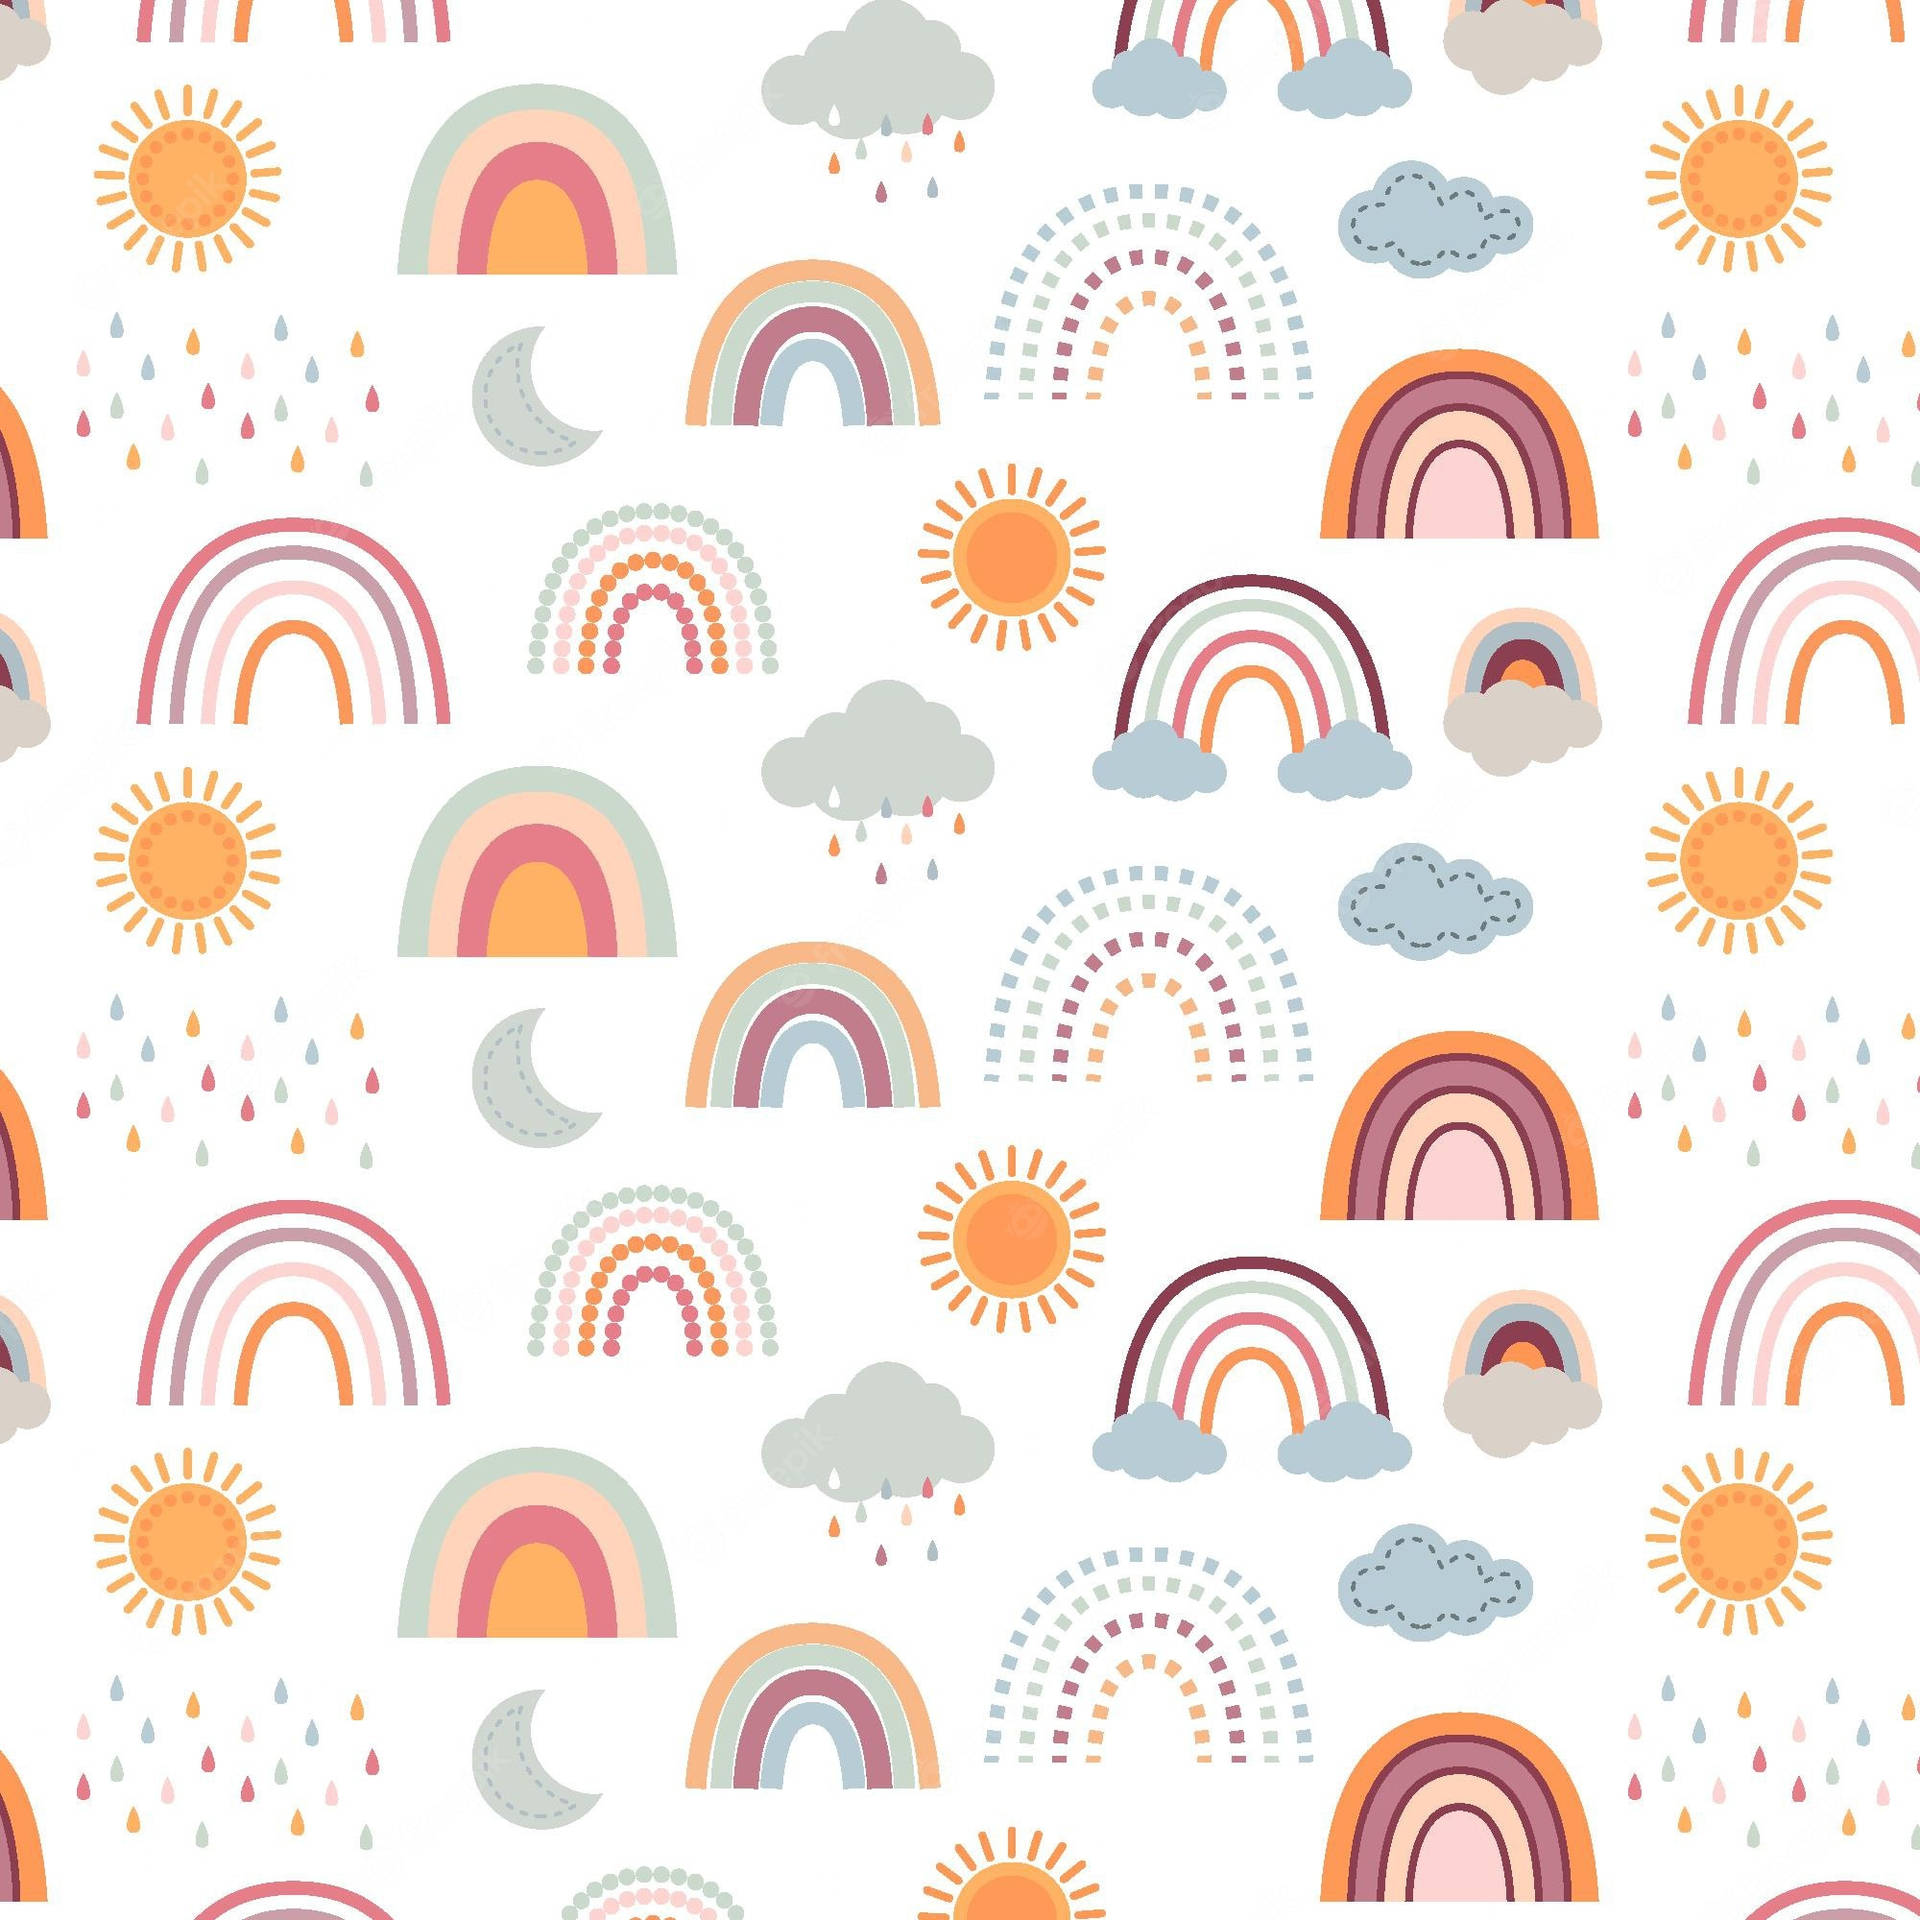 Lad de glade vibes komme ind med dette modige og smukke Boho Rainbow-design. Wallpaper